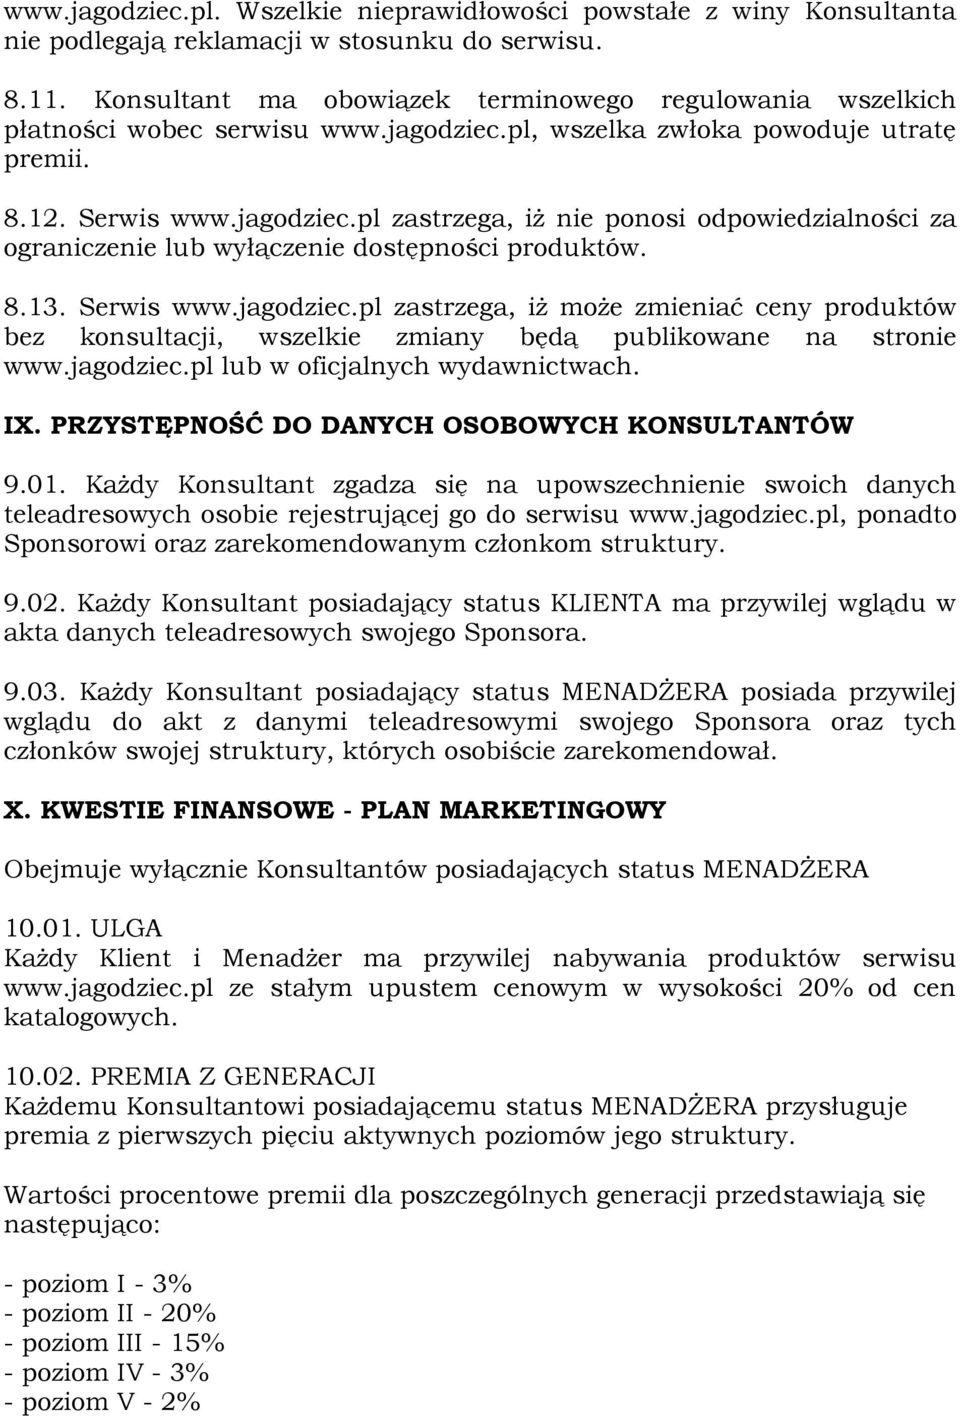 8.13. Serwis www.jagodziec.pl zastrzega, iż może zmieniać ceny produktów bez konsultacji, wszelkie zmiany będą publikowane na stronie www.jagodziec.pl lub w oficjalnych wydawnictwach. IX.